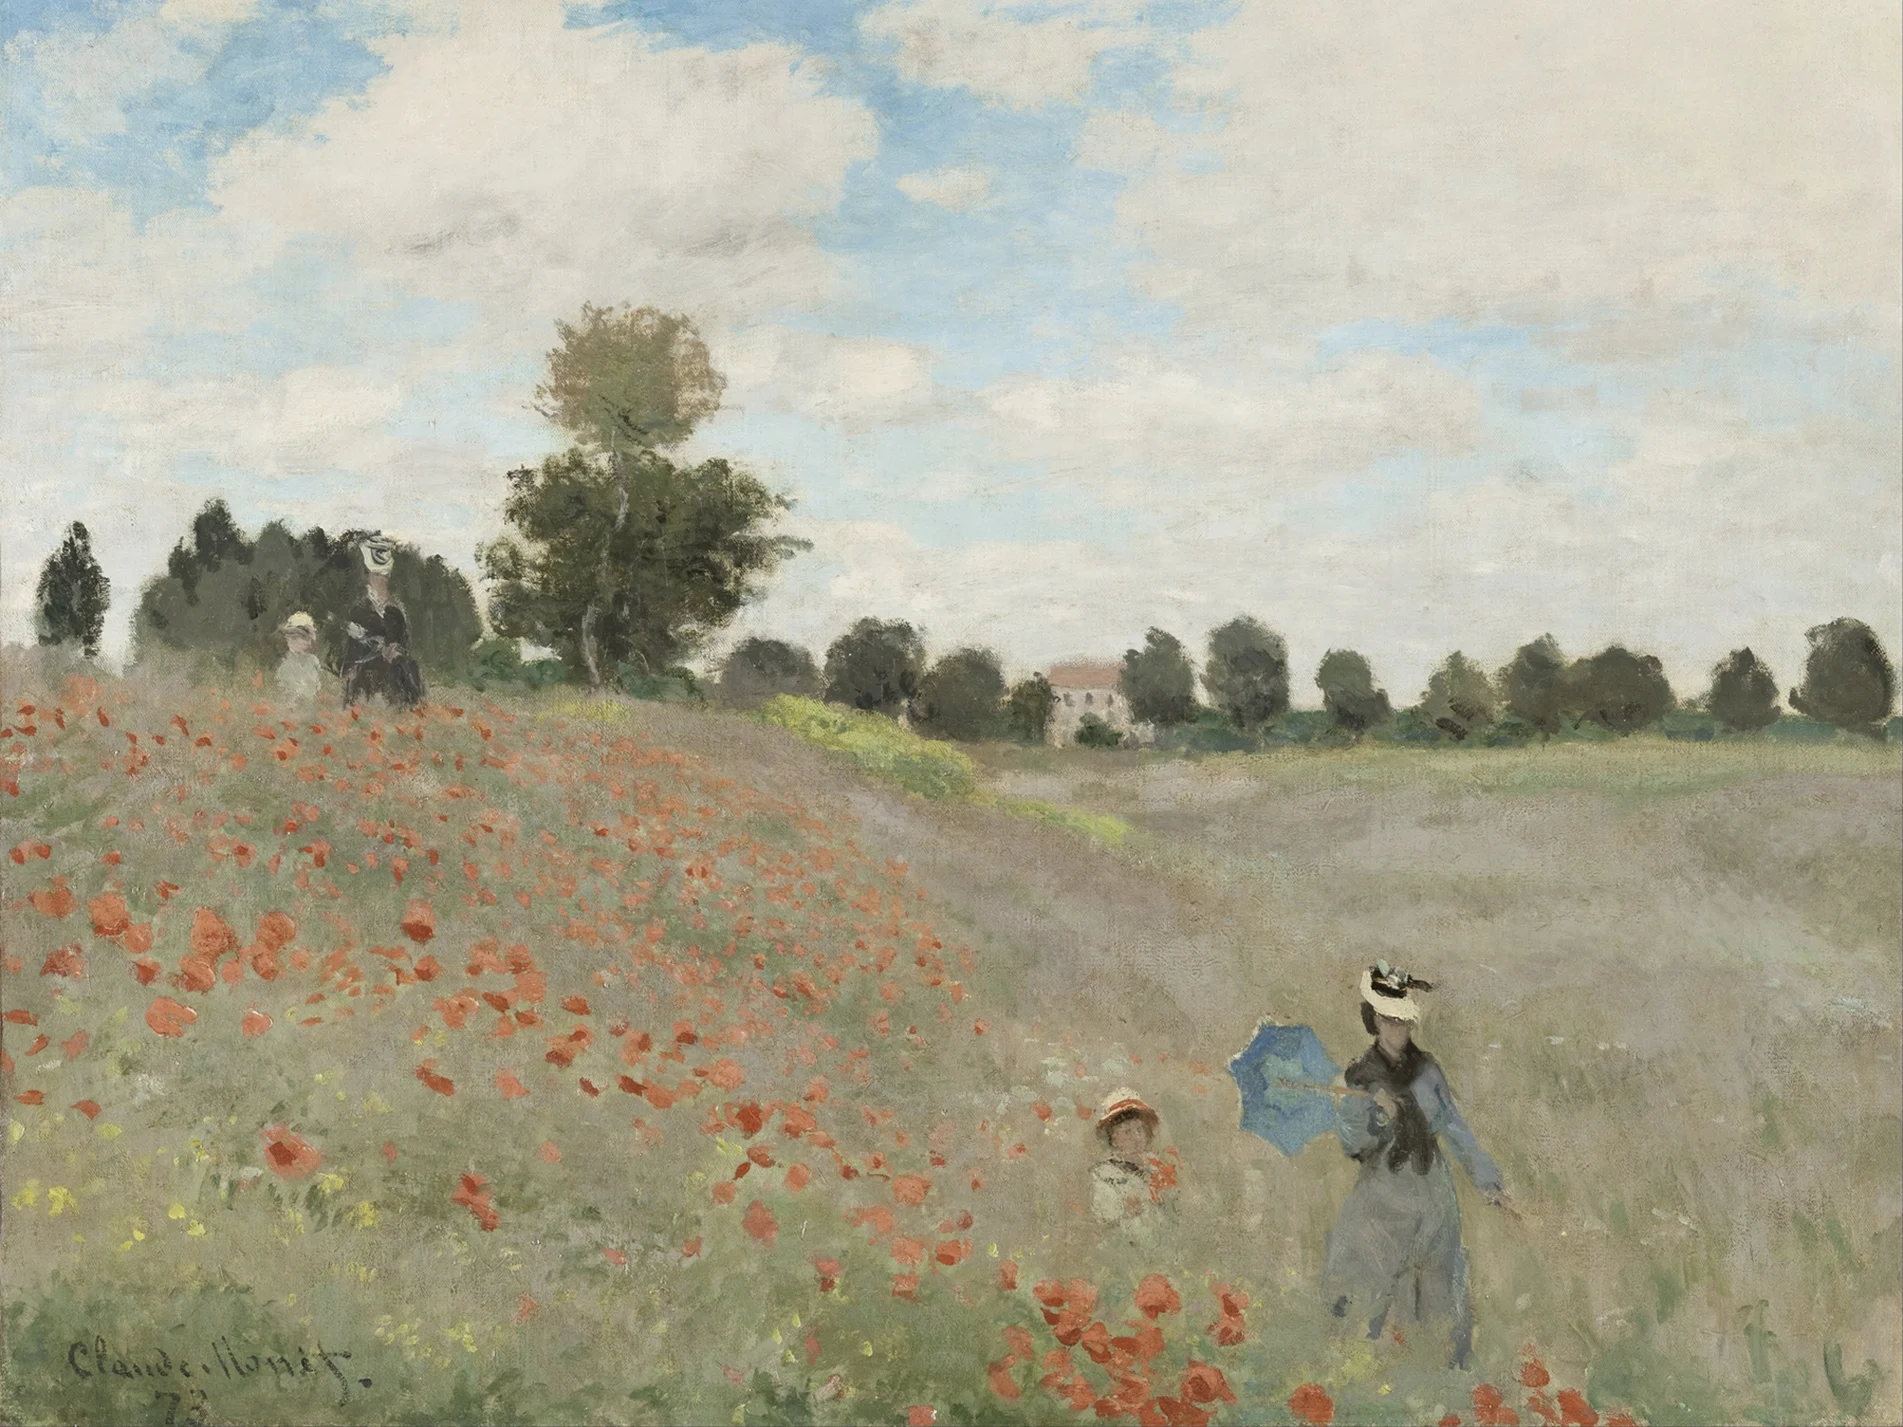 Poppy Field by Claude Monet (1840-1926)